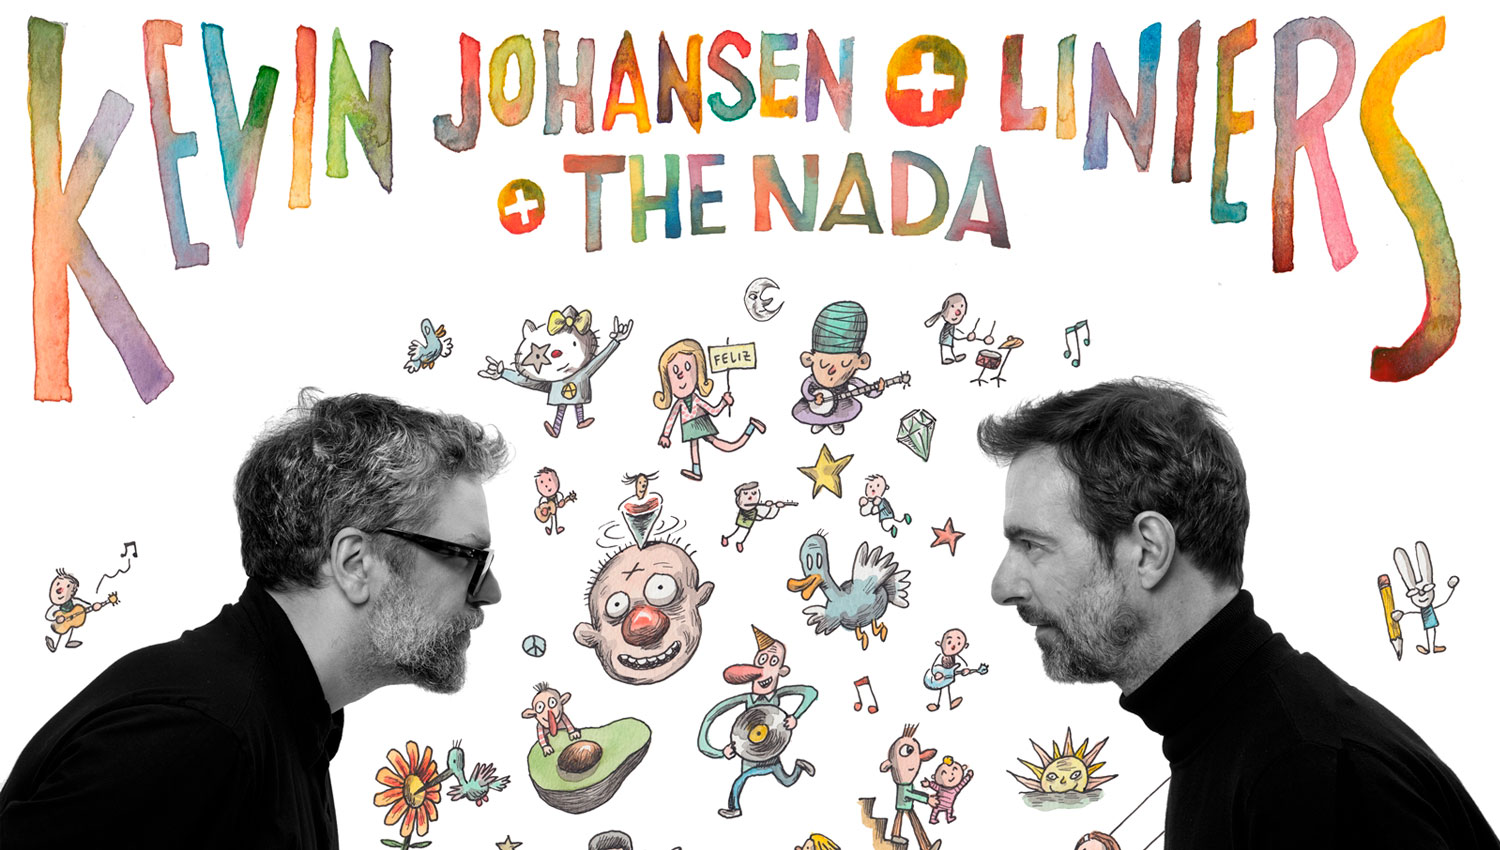 Kevin Johansen, Liniers y The Nada en Murcia